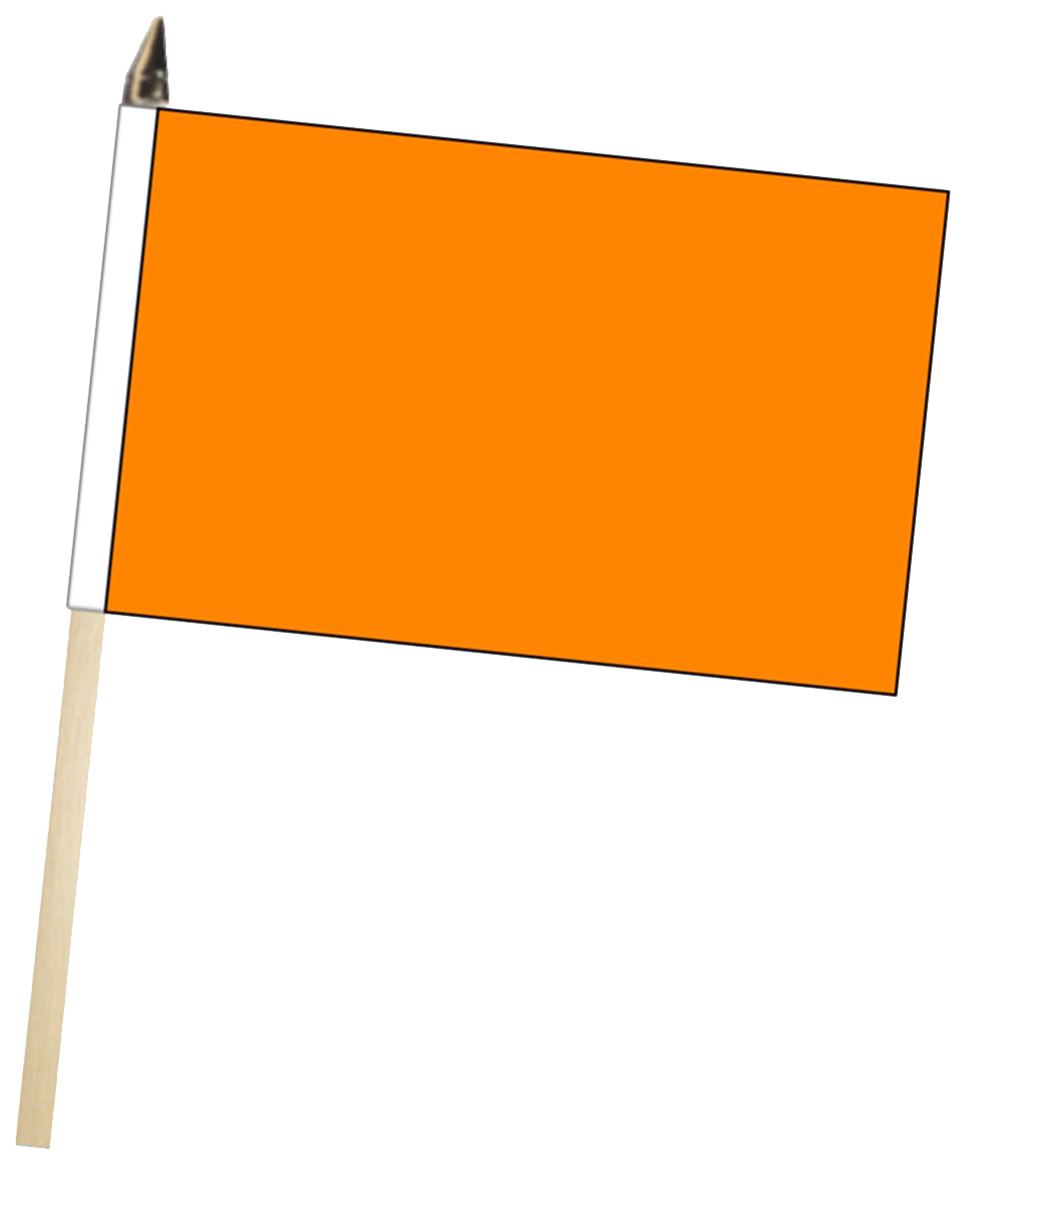 العلم البرتقالي العادي png clipart